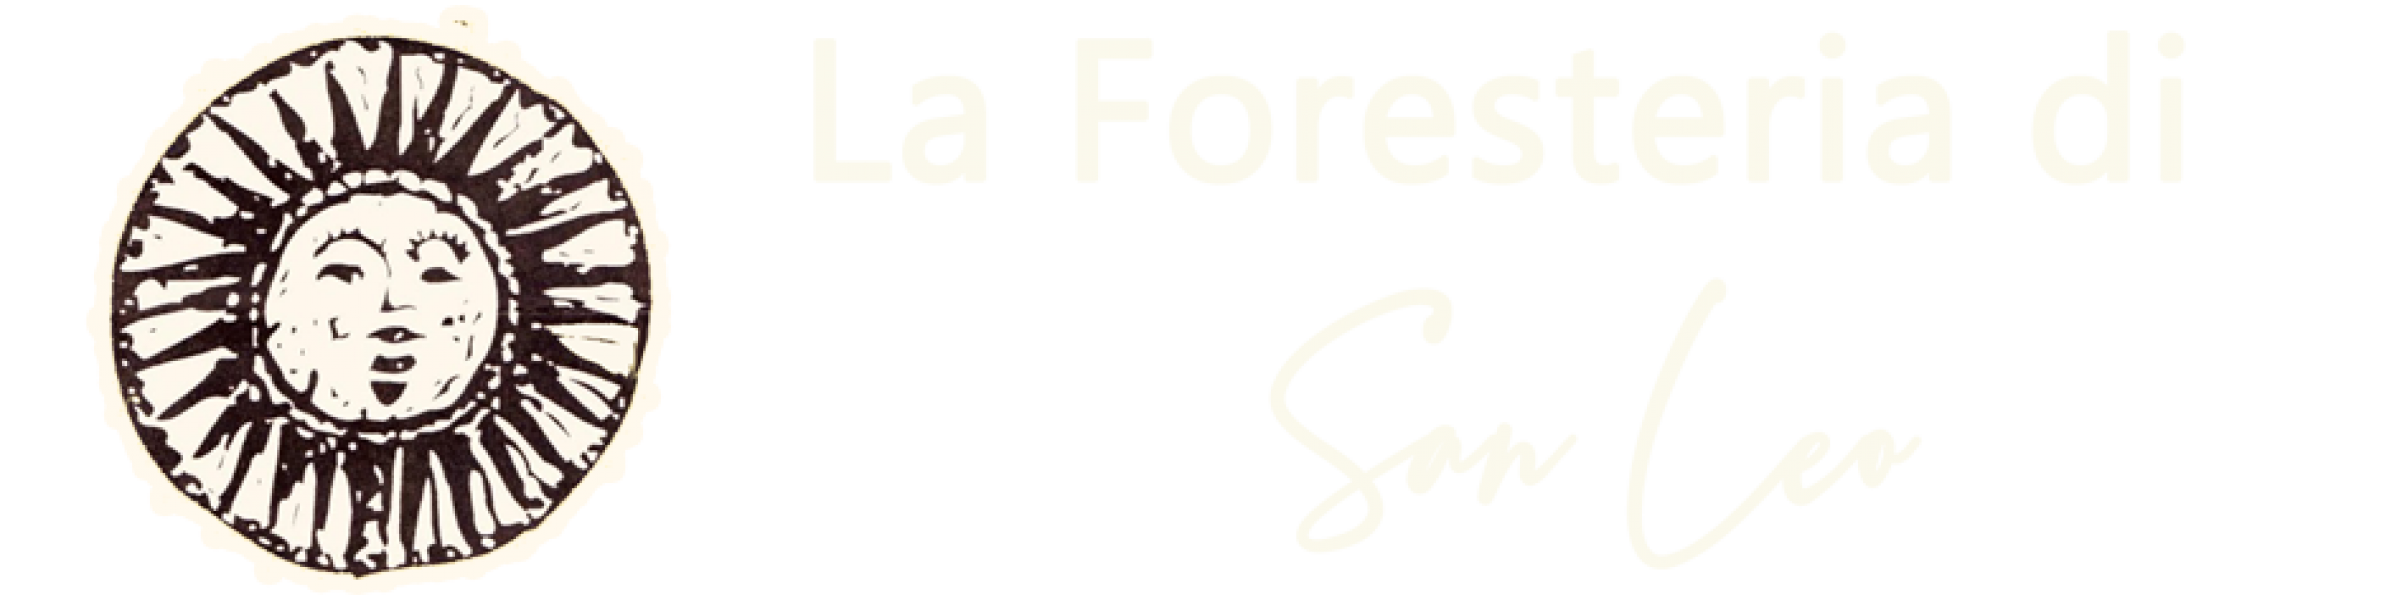 La Foresteria di San Leo